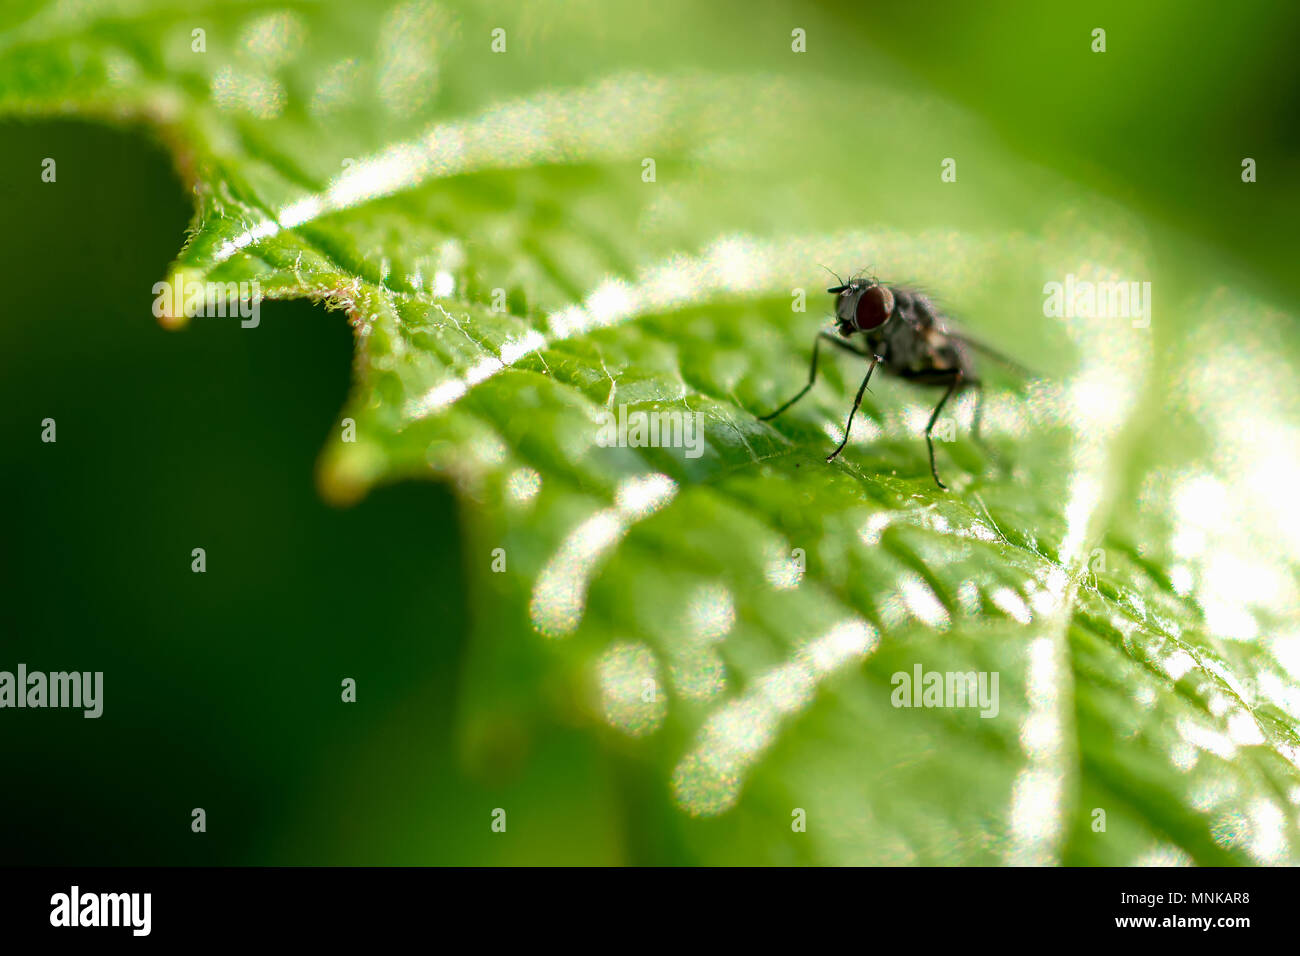 Primo piano di una mosca su un verde foglia di uva Foto Stock